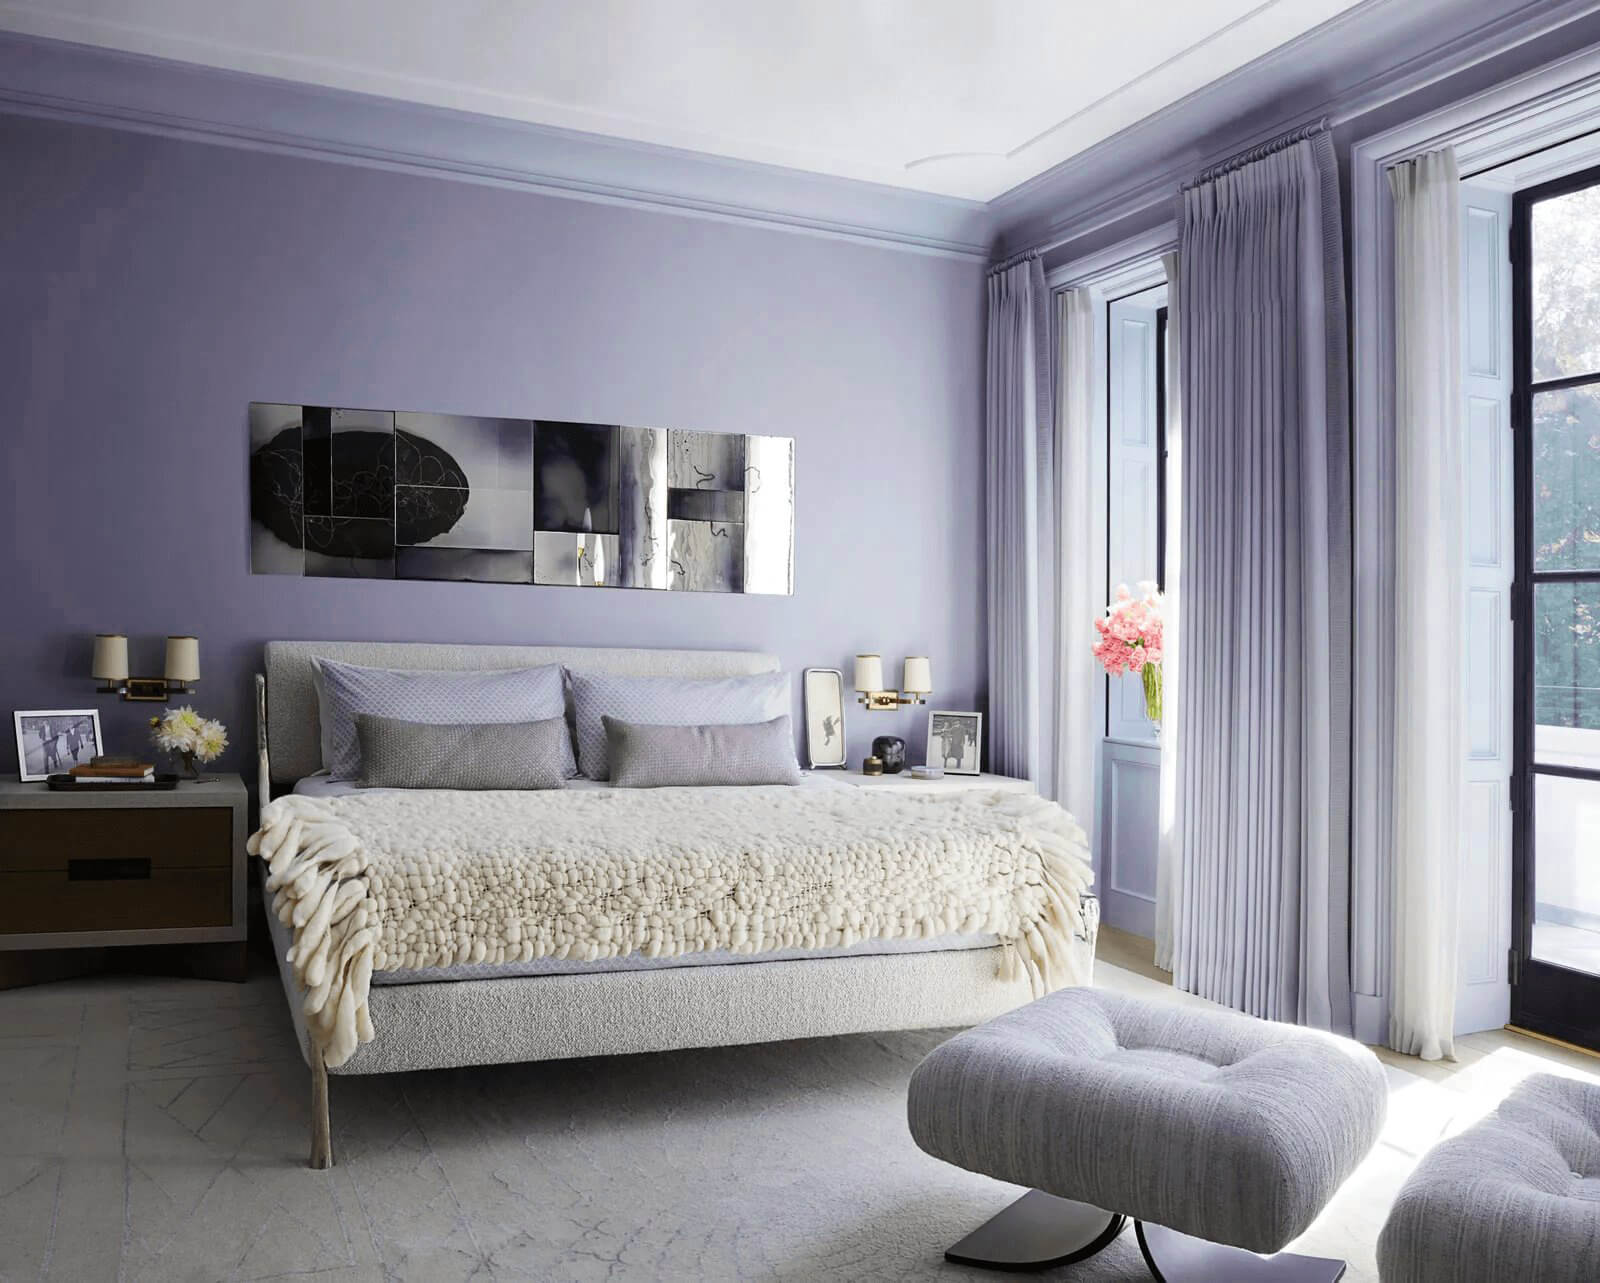 Mẫu phòng ngủ master màu tím pastel dễ dùng 